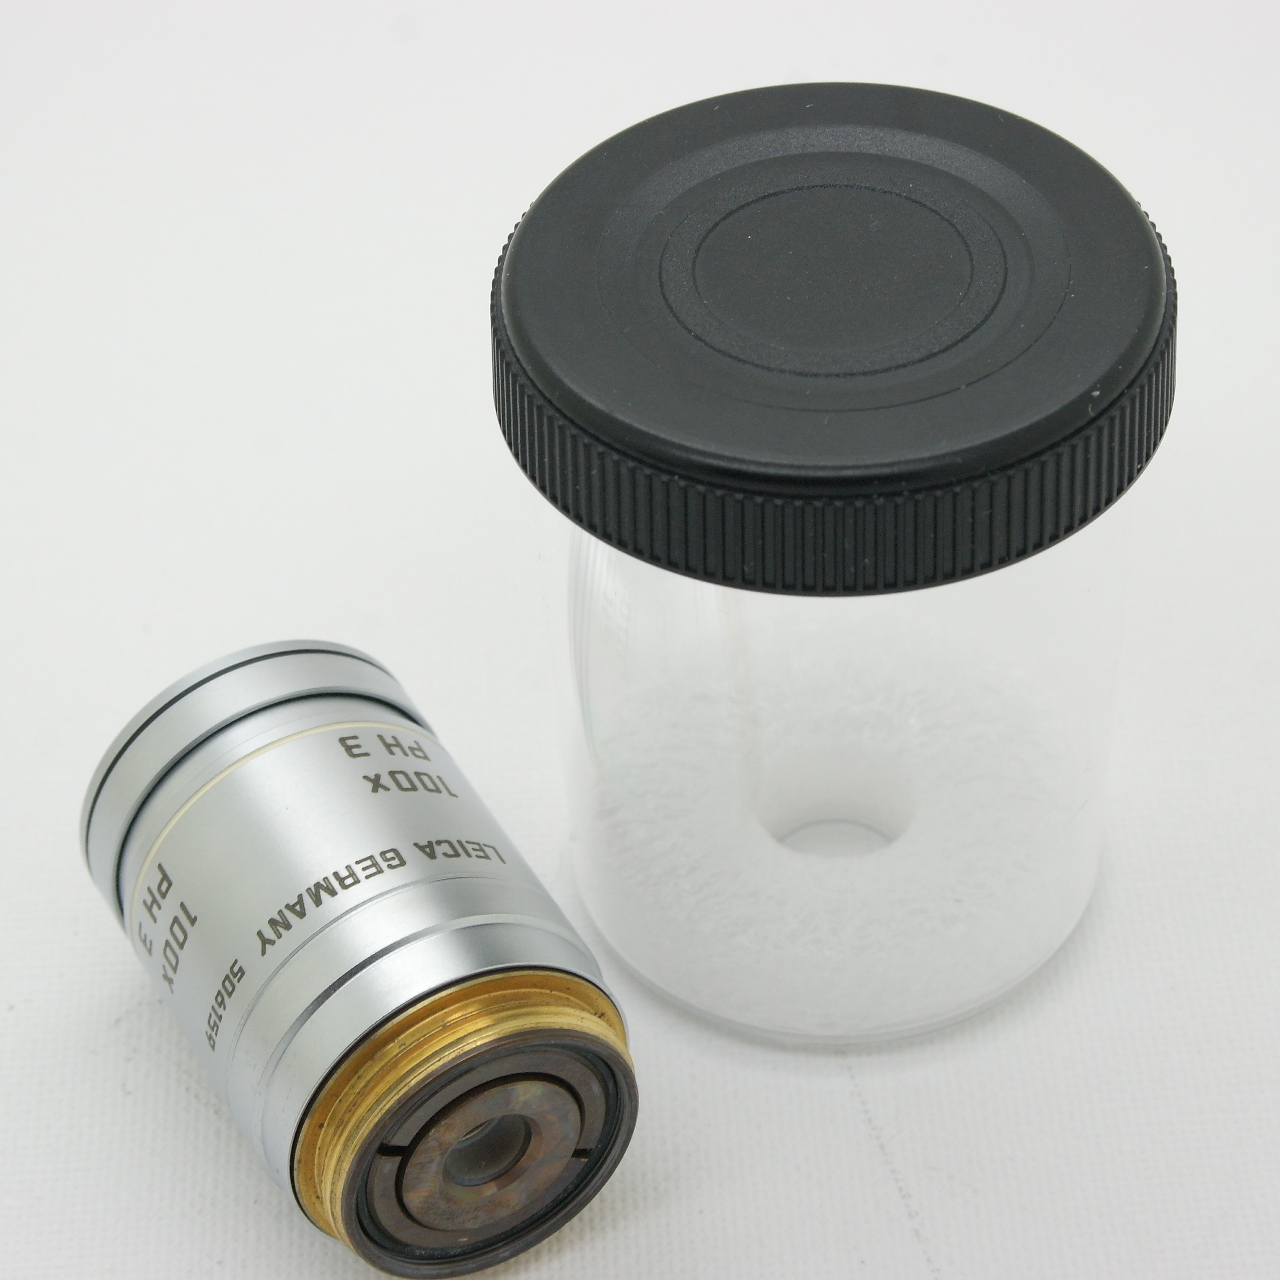 Obbiettivo microscopio LEICA  ∞/-/ D N PLAN 100x/1.25 OIL PH3 acontrasto di fase